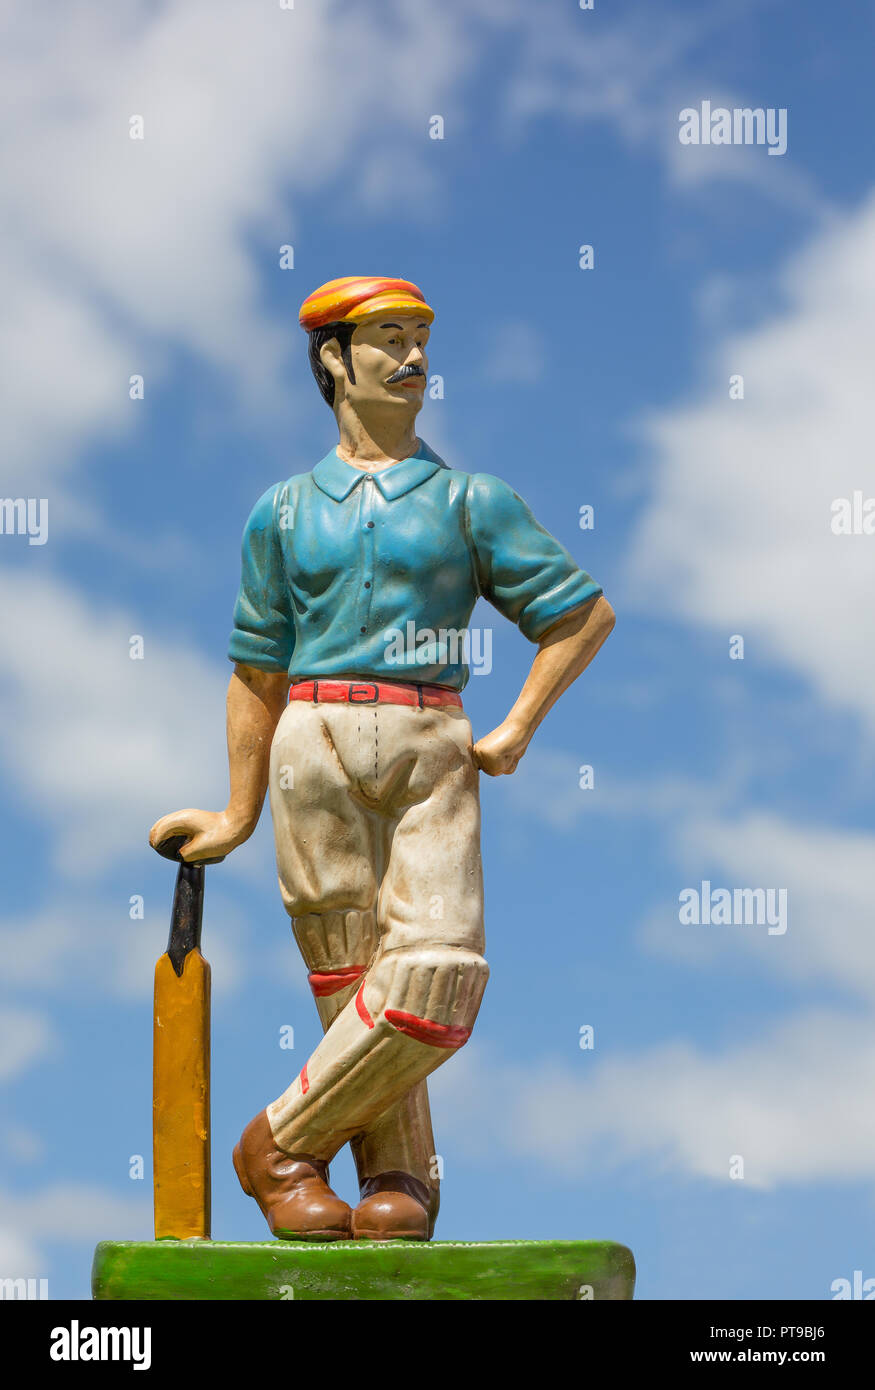 Dettagliato, ritratto di close-up di vintage cricketer ornamento contro il cielo blu sullo sfondo. Foto Stock